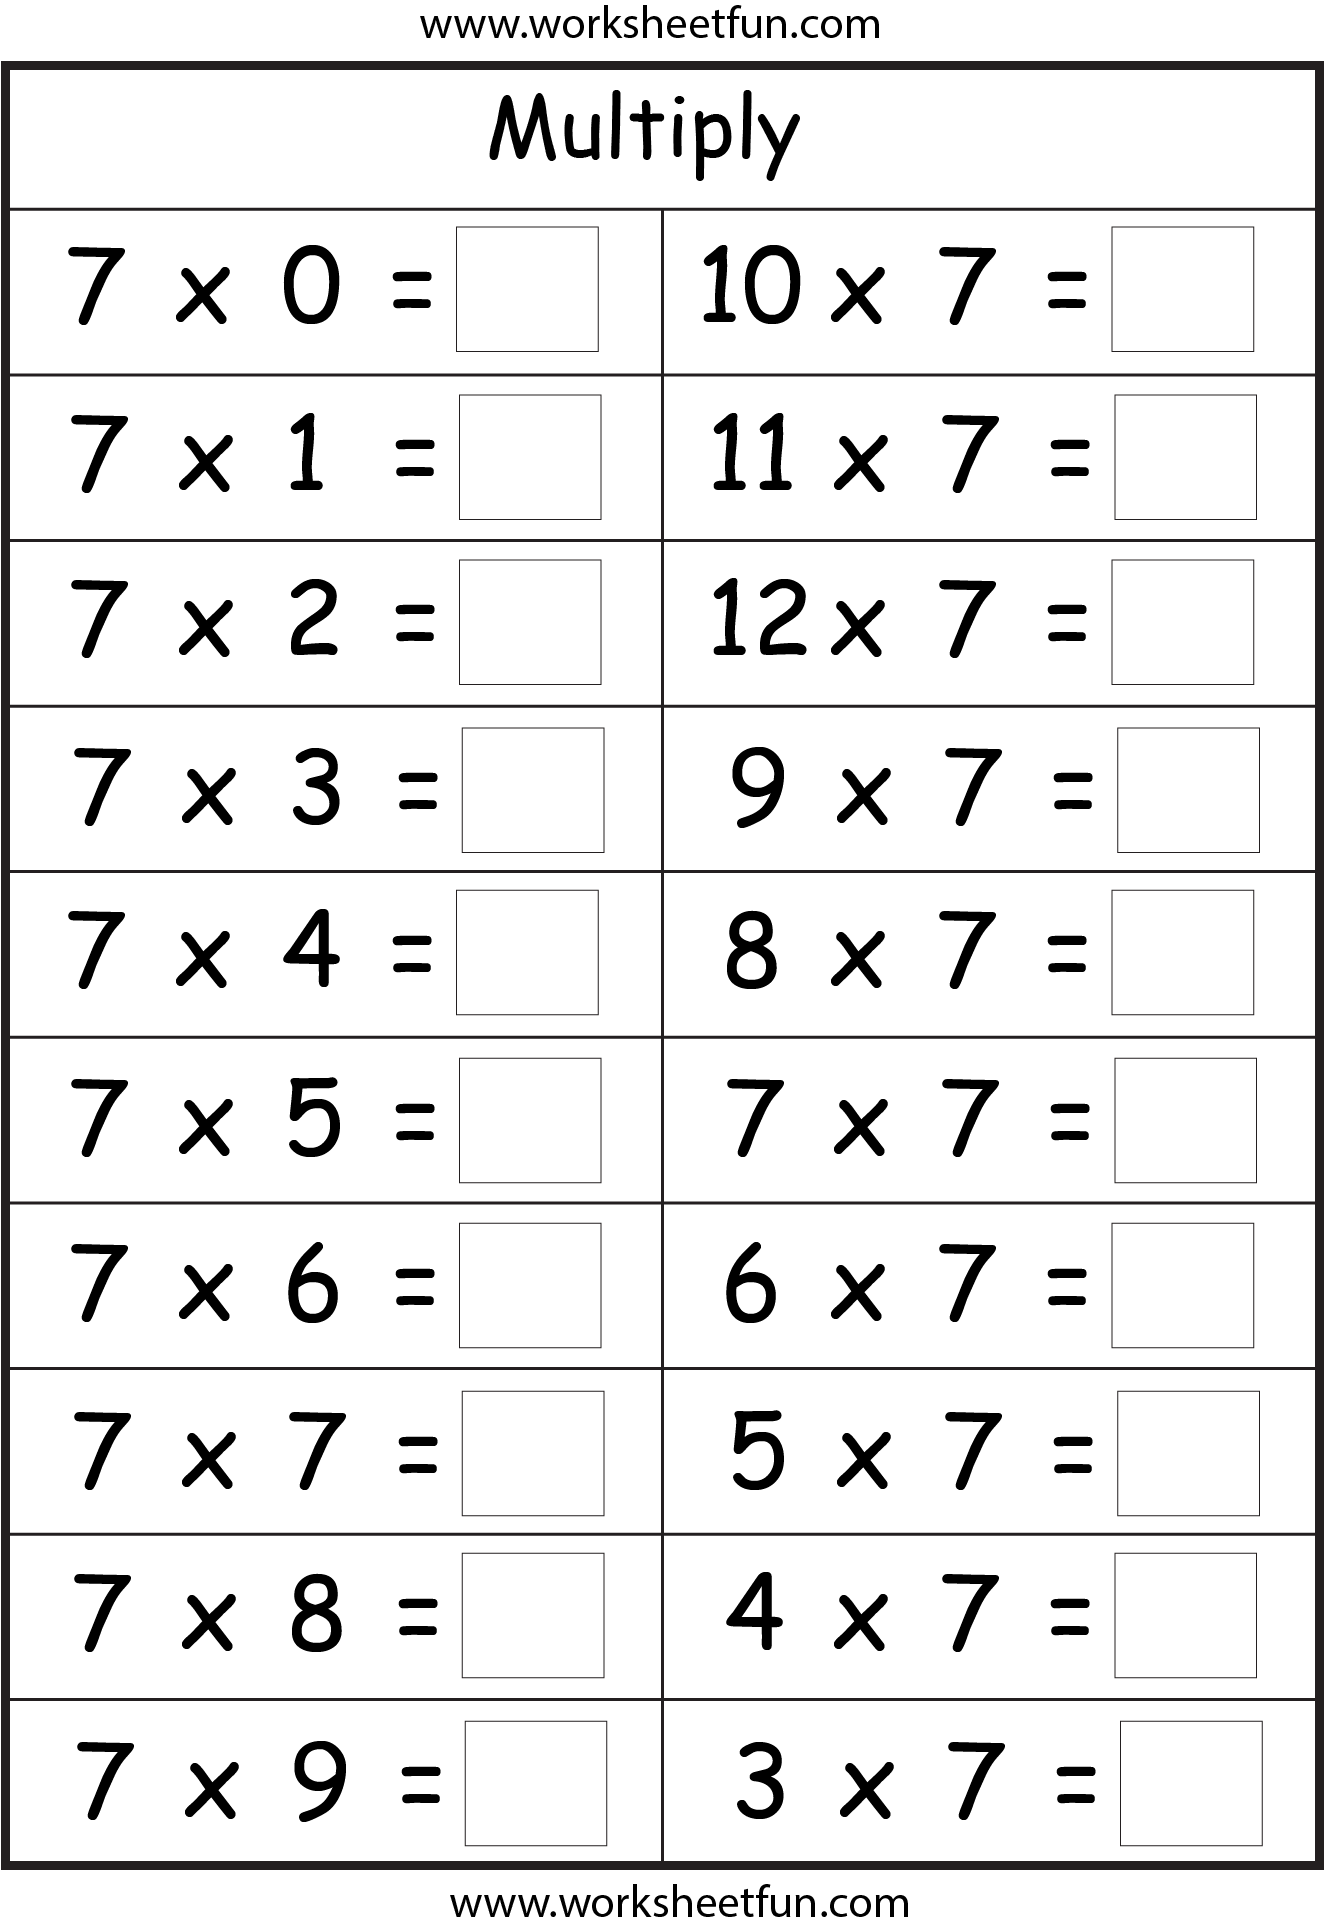 Multiplication Worksheet For 7 S